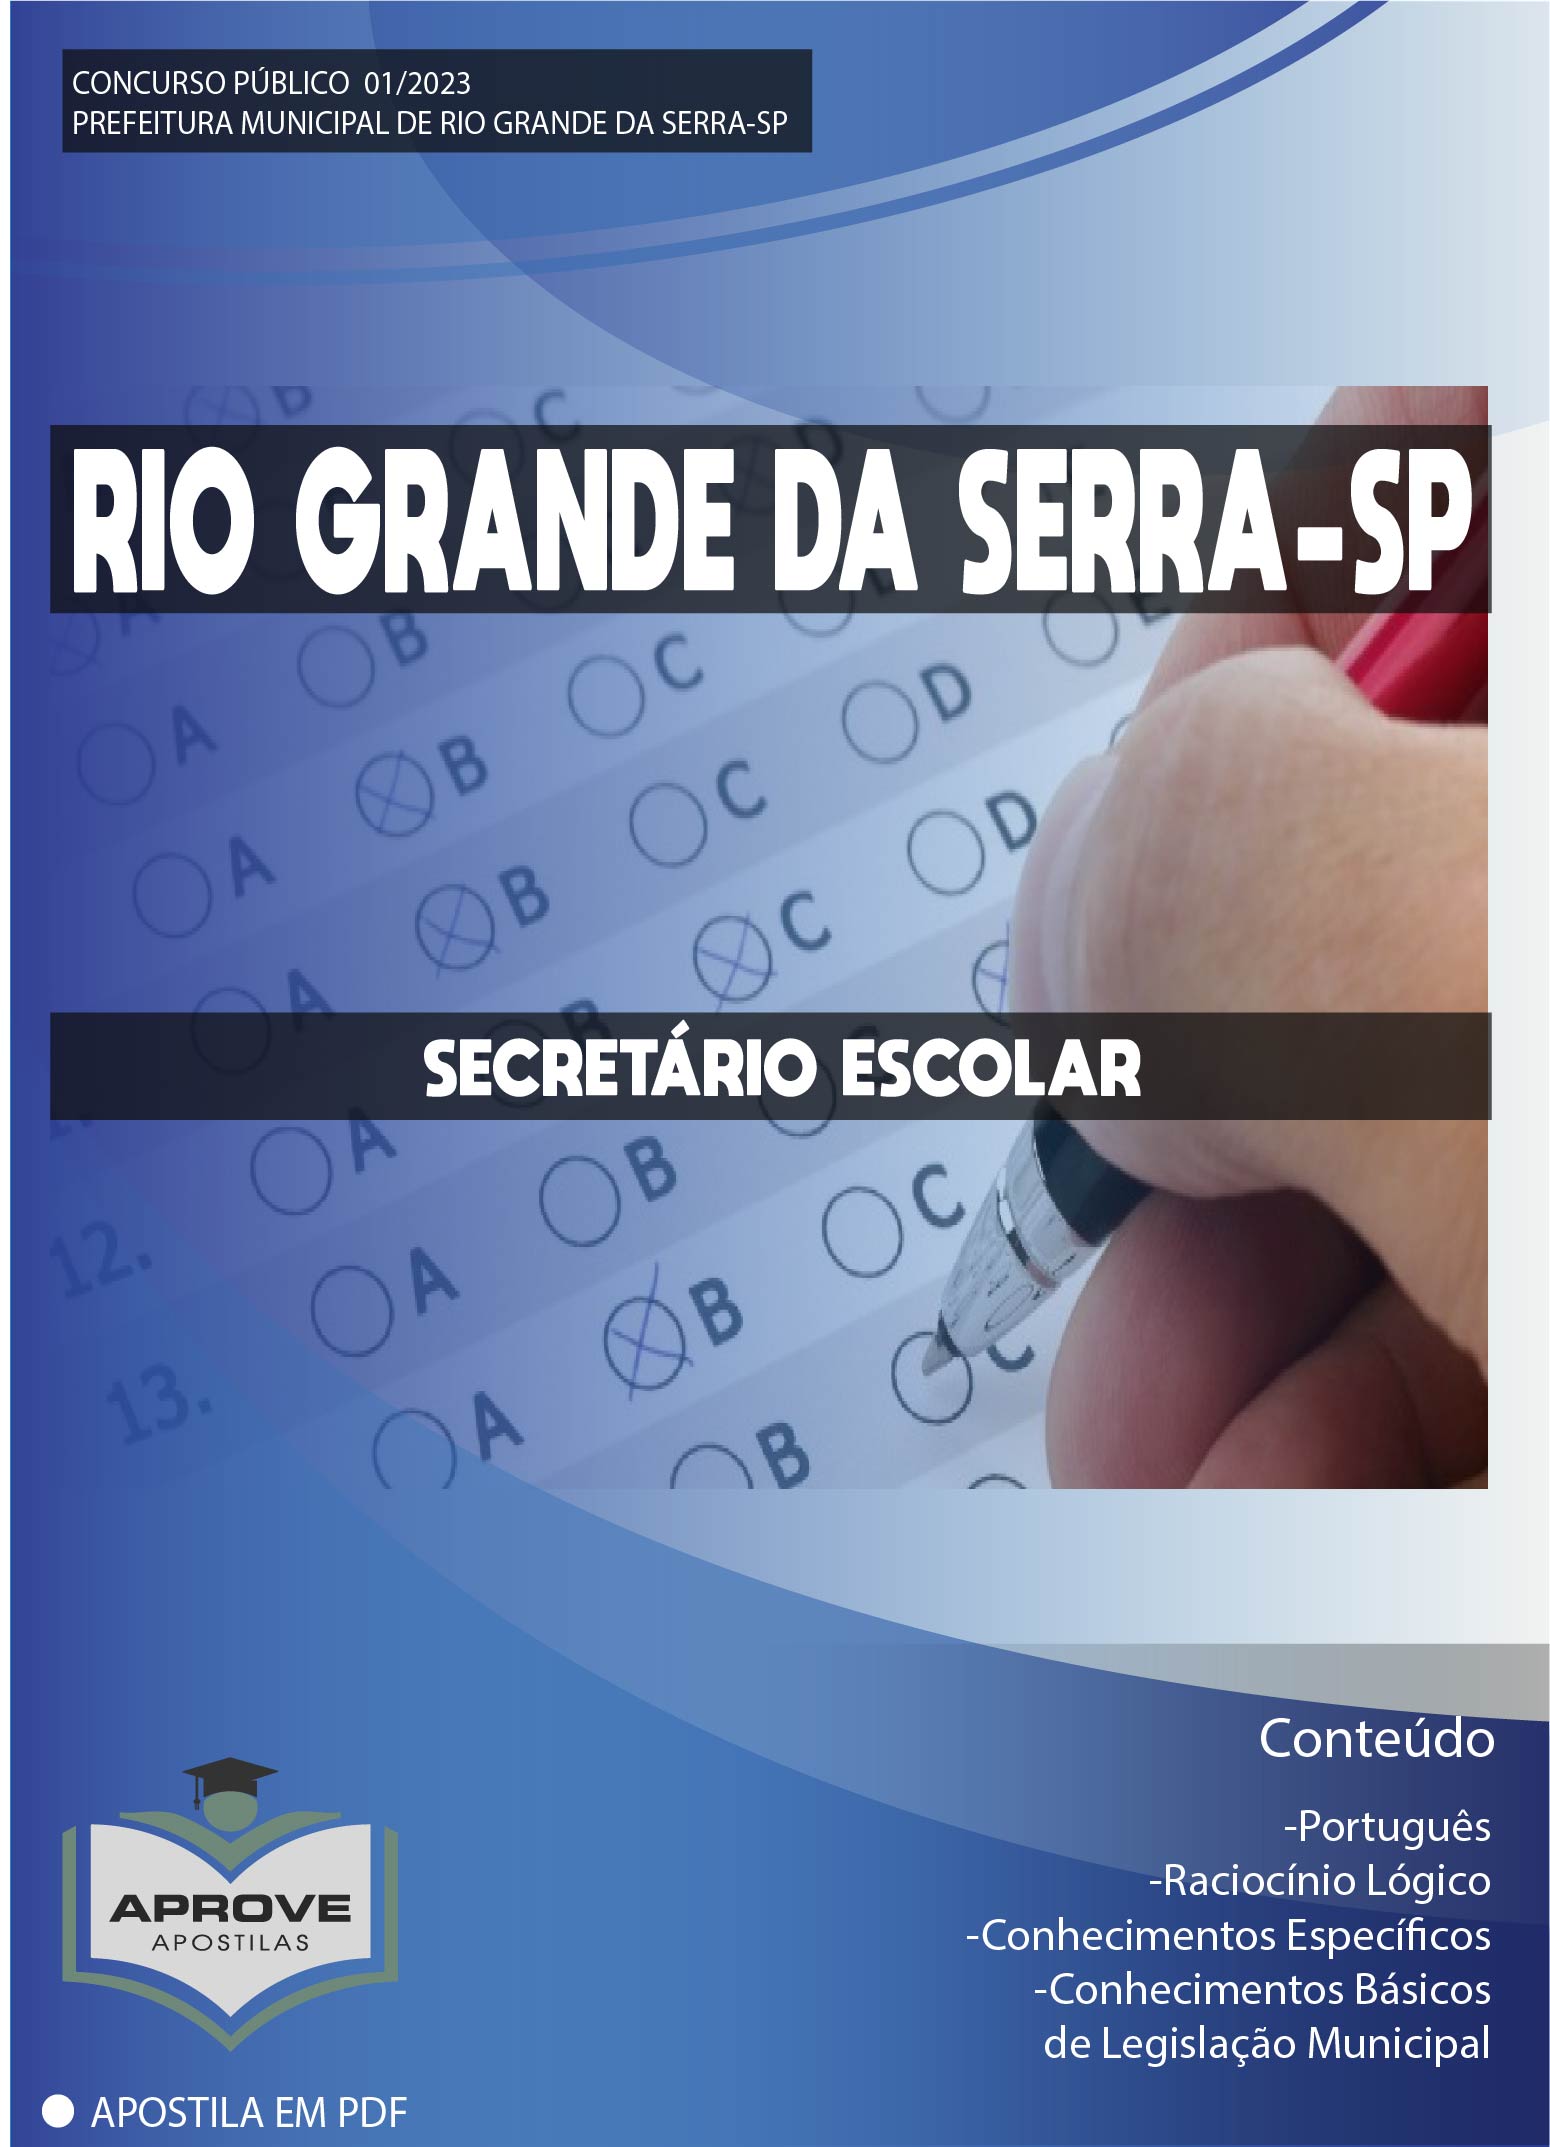 Apostila Prefeotira Rio Claro Rj - Secretária(O) Escolar